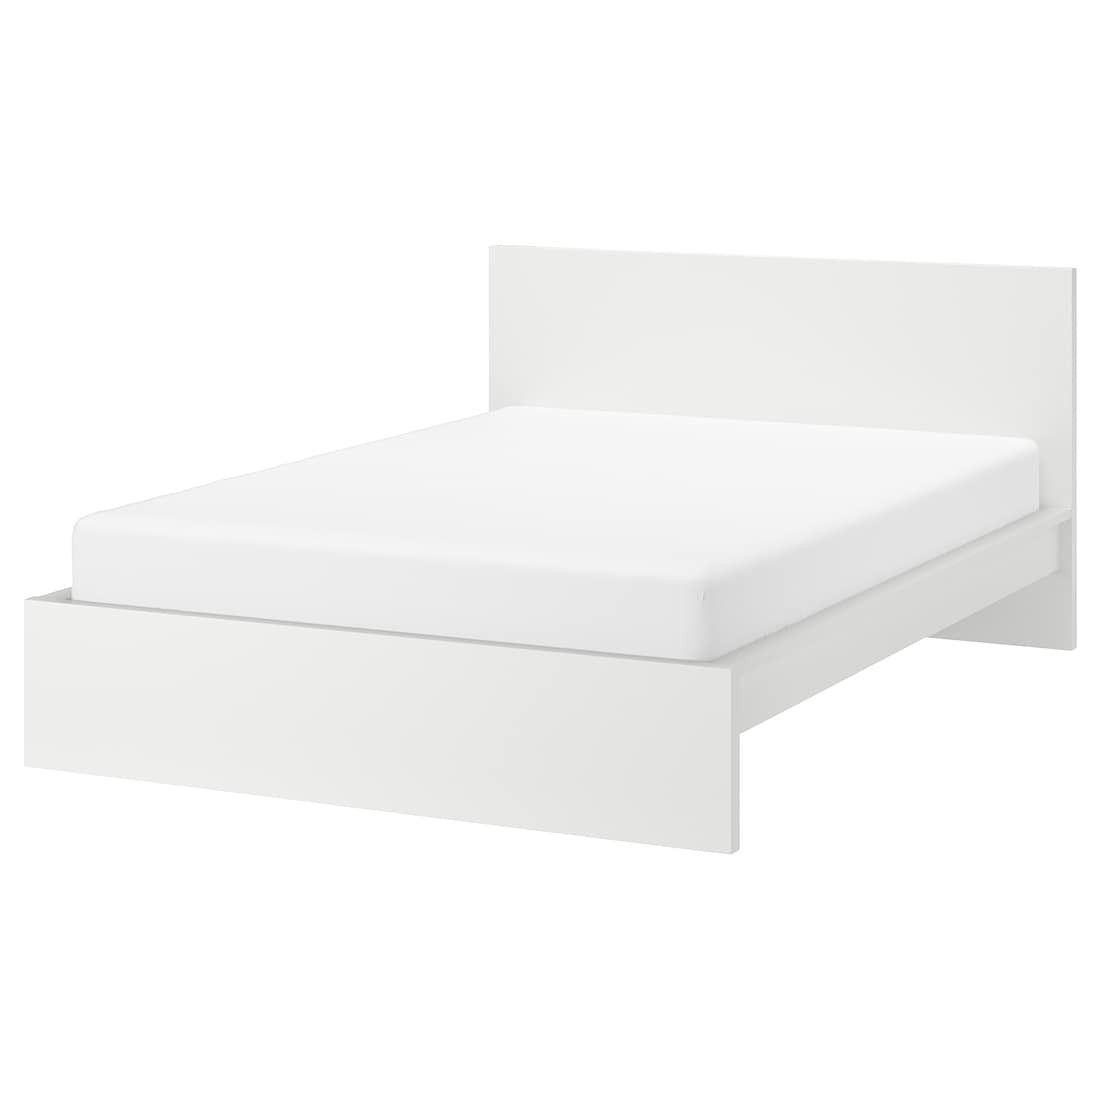 IKEA MALM МАЛЬМ Кровать двуспальная, высокий, белый, 140x200 см 60249470 602.494.70